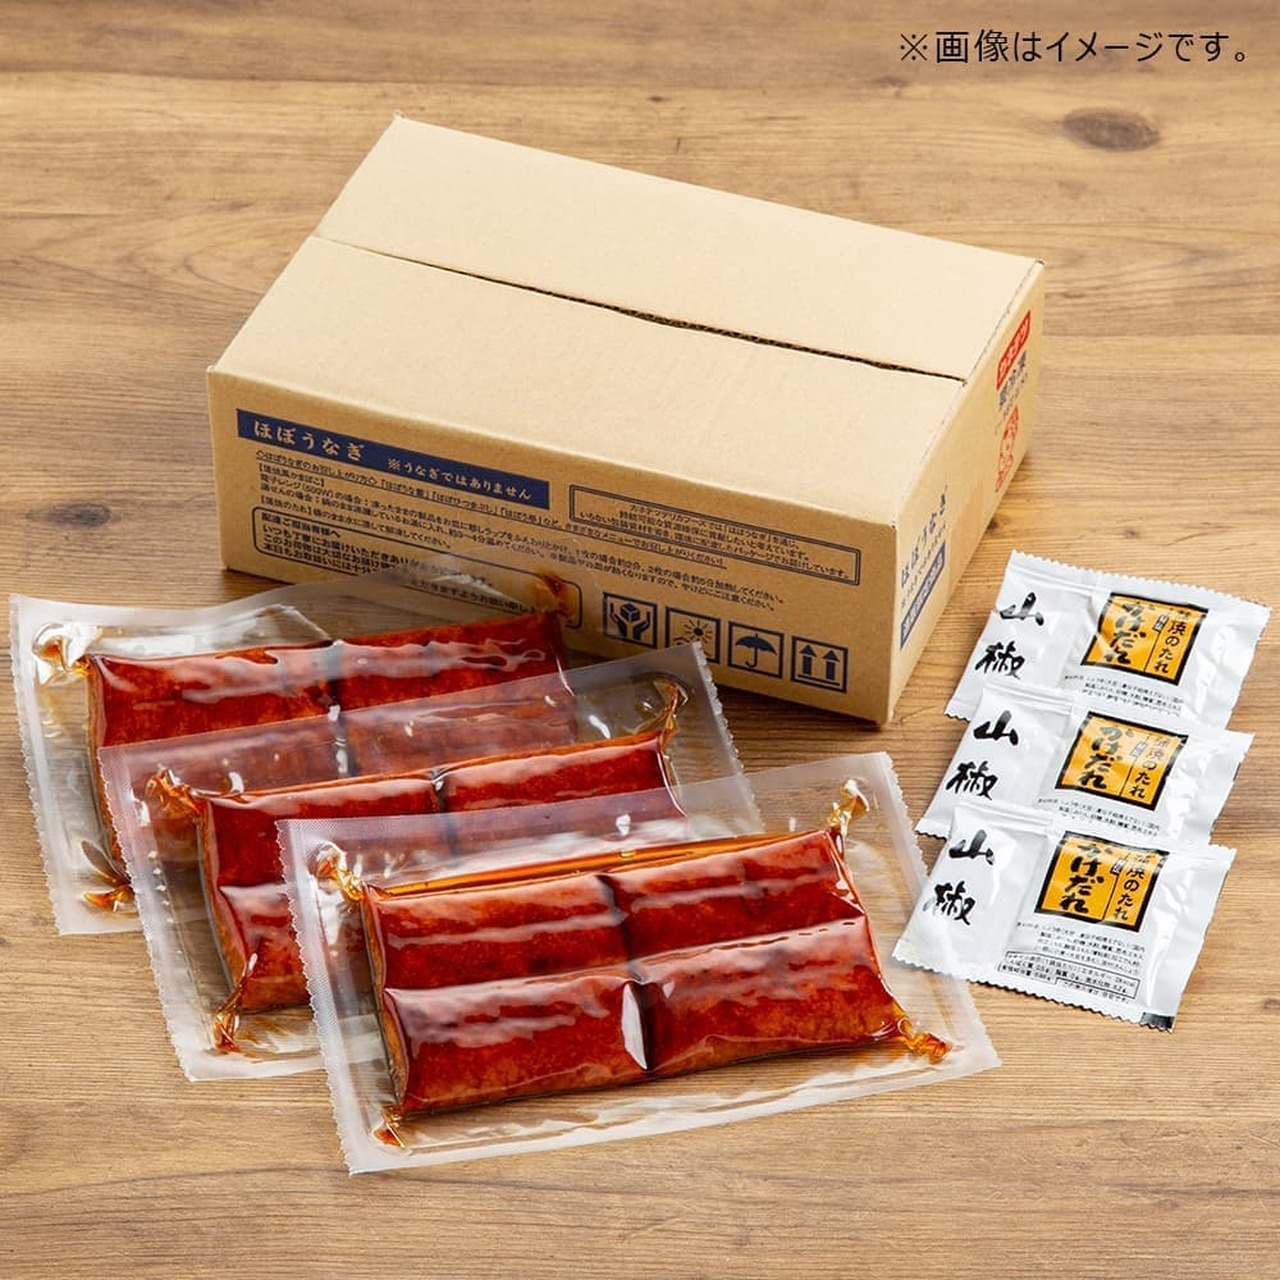 Kanetsu Delica Foods "Almost Unagi"